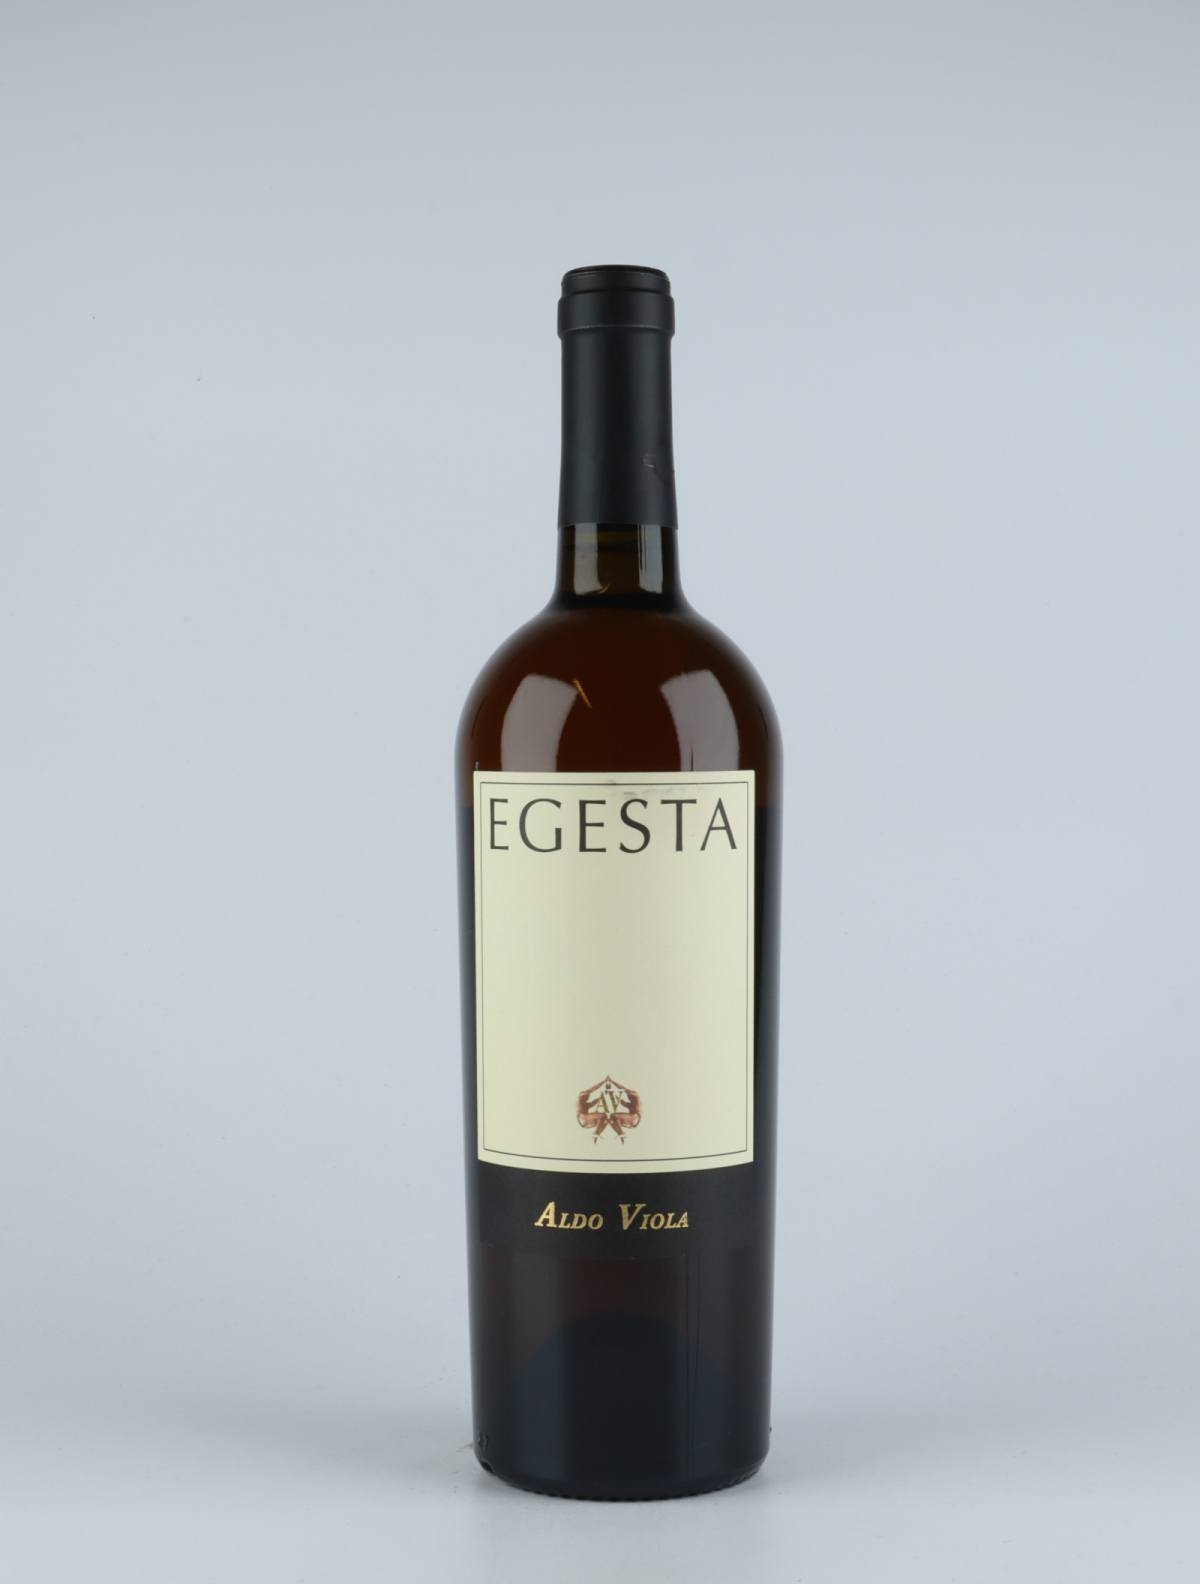 En flaske 2017 Egesta Grillo Bianco Orange vin fra Aldo Viola, Sicilien i Italien